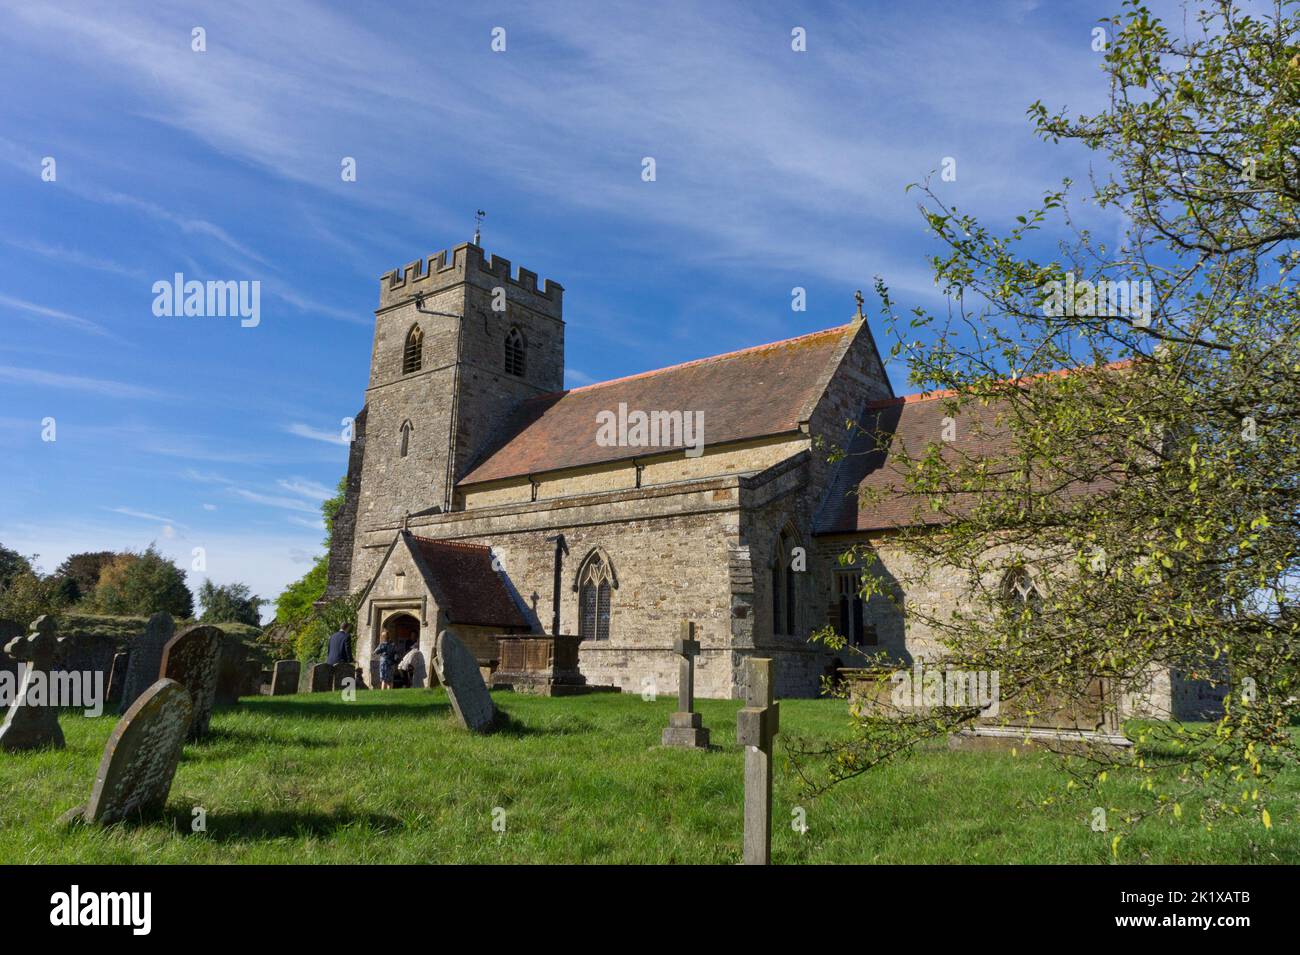 Exterior de la iglesia de St James el menos en el pueblo de Sulgrave, Northamptonshire, Reino Unido; las partes más antiguas datan del siglo 14th. Foto de stock